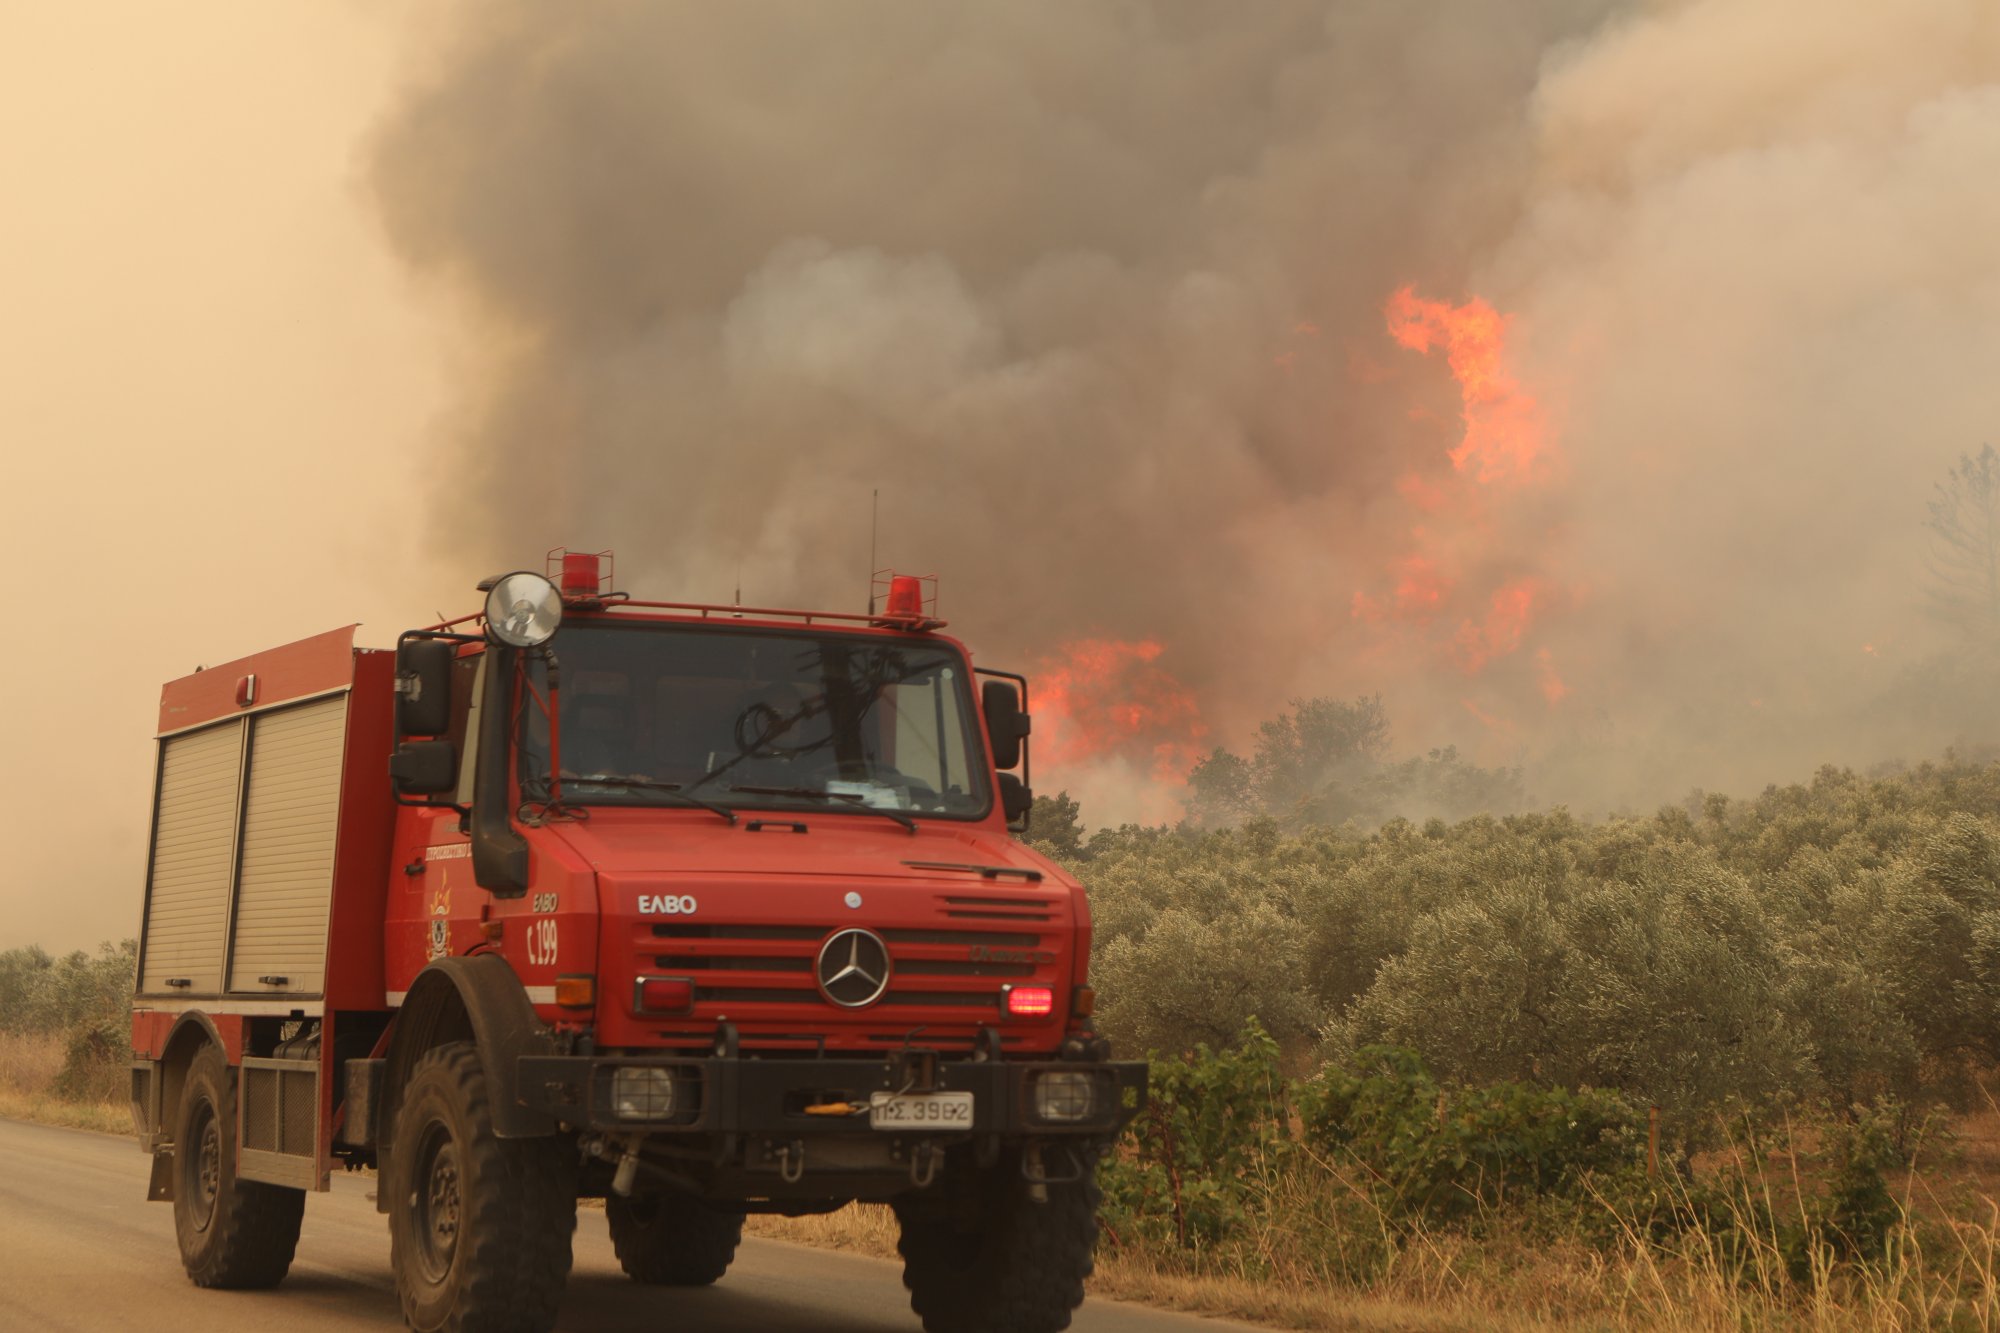 Φωτιά στον Έβρο: Οι άνεμοι δυσκολεύουν το έργο της κατάσβεσης - Αντιμέτωποι με δύσκολες συνθήκες οι πυροσβέστες